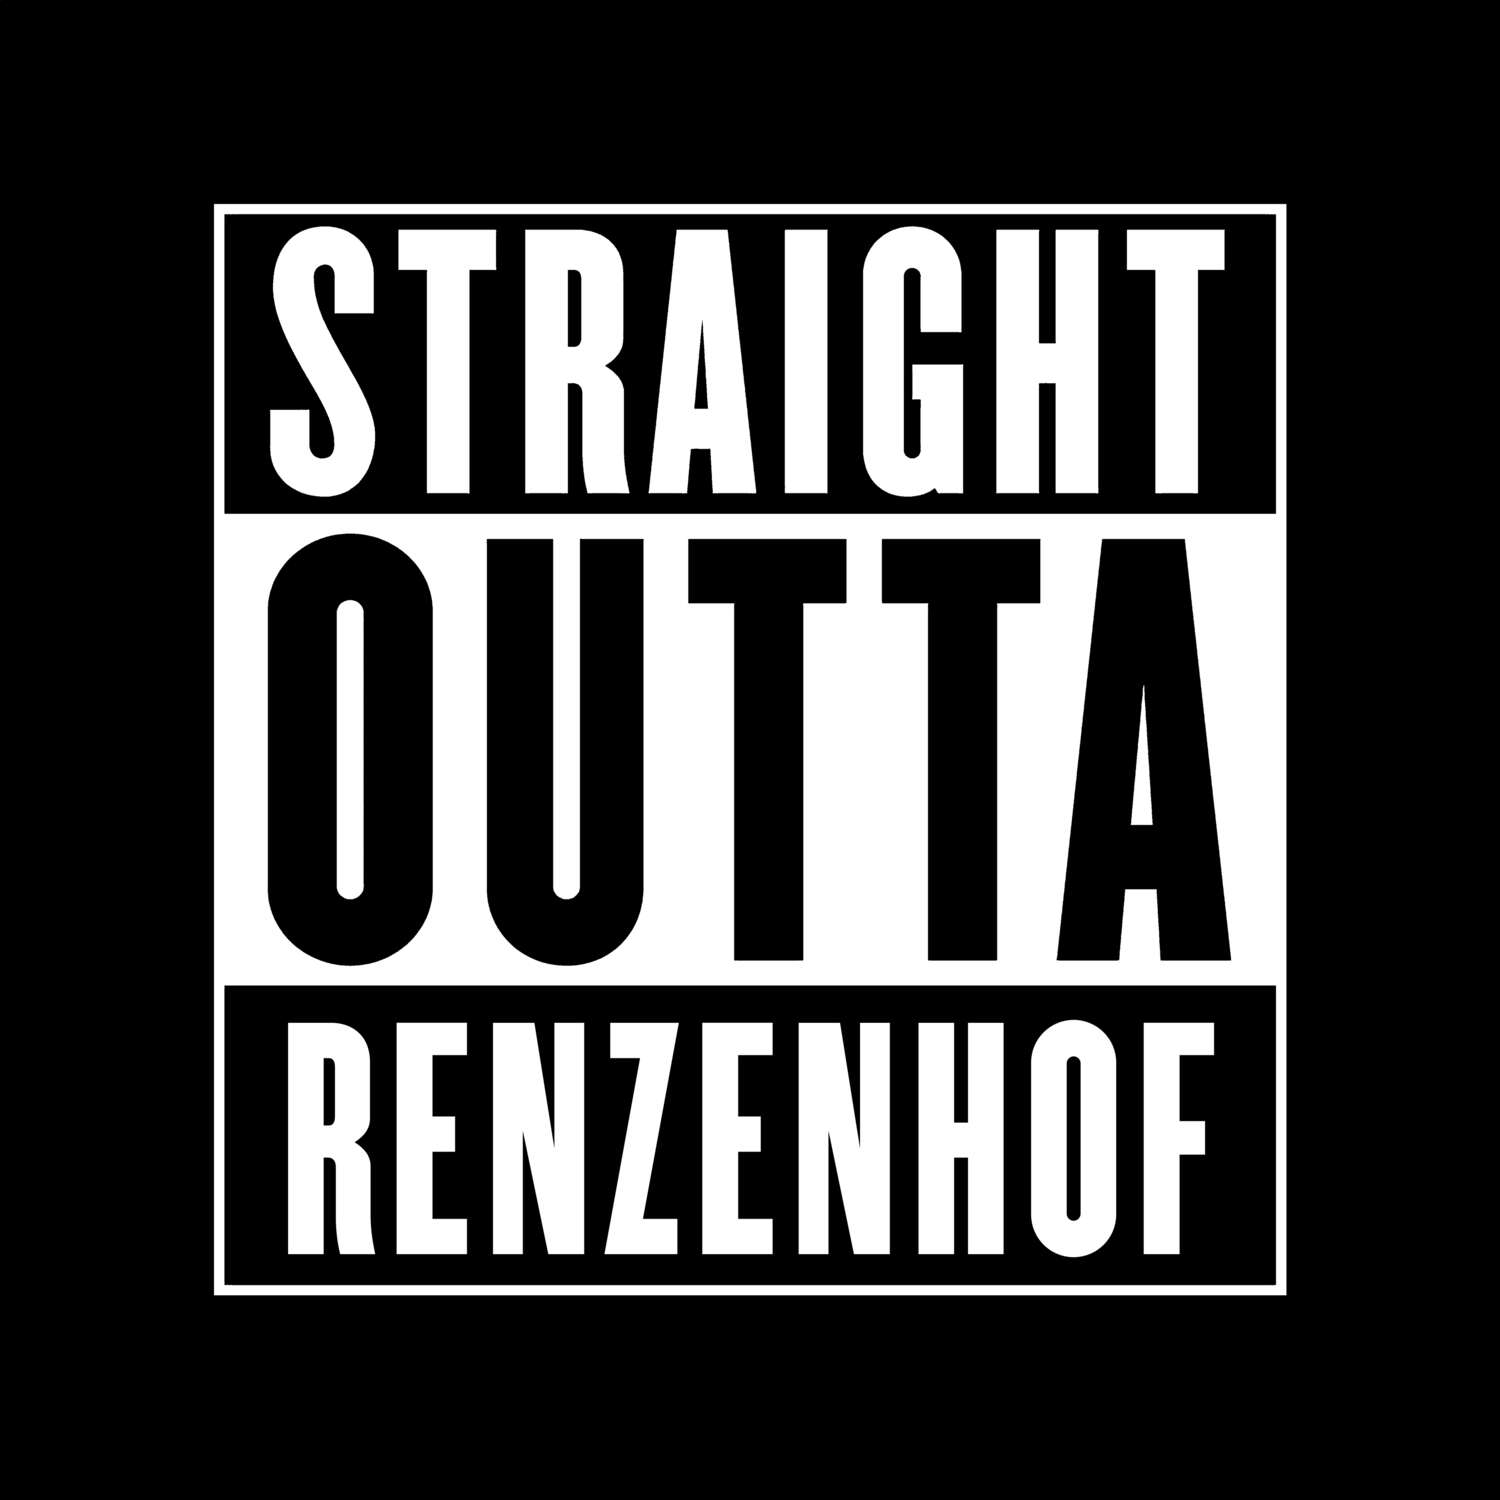 Renzenhof T-Shirt »Straight Outta«